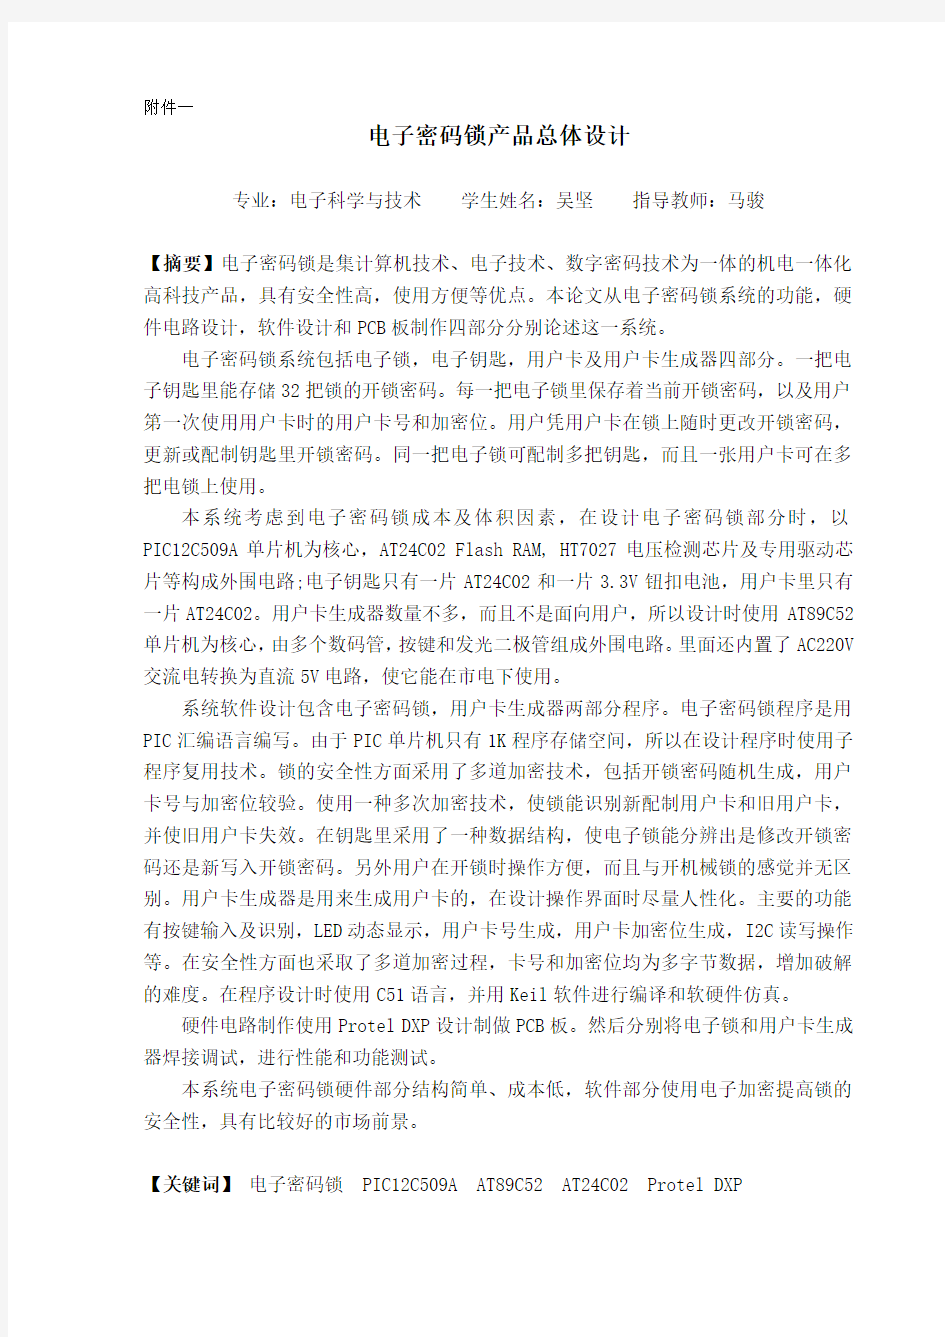 杭州电子科技大学优秀毕业设计(论文)摘要规范